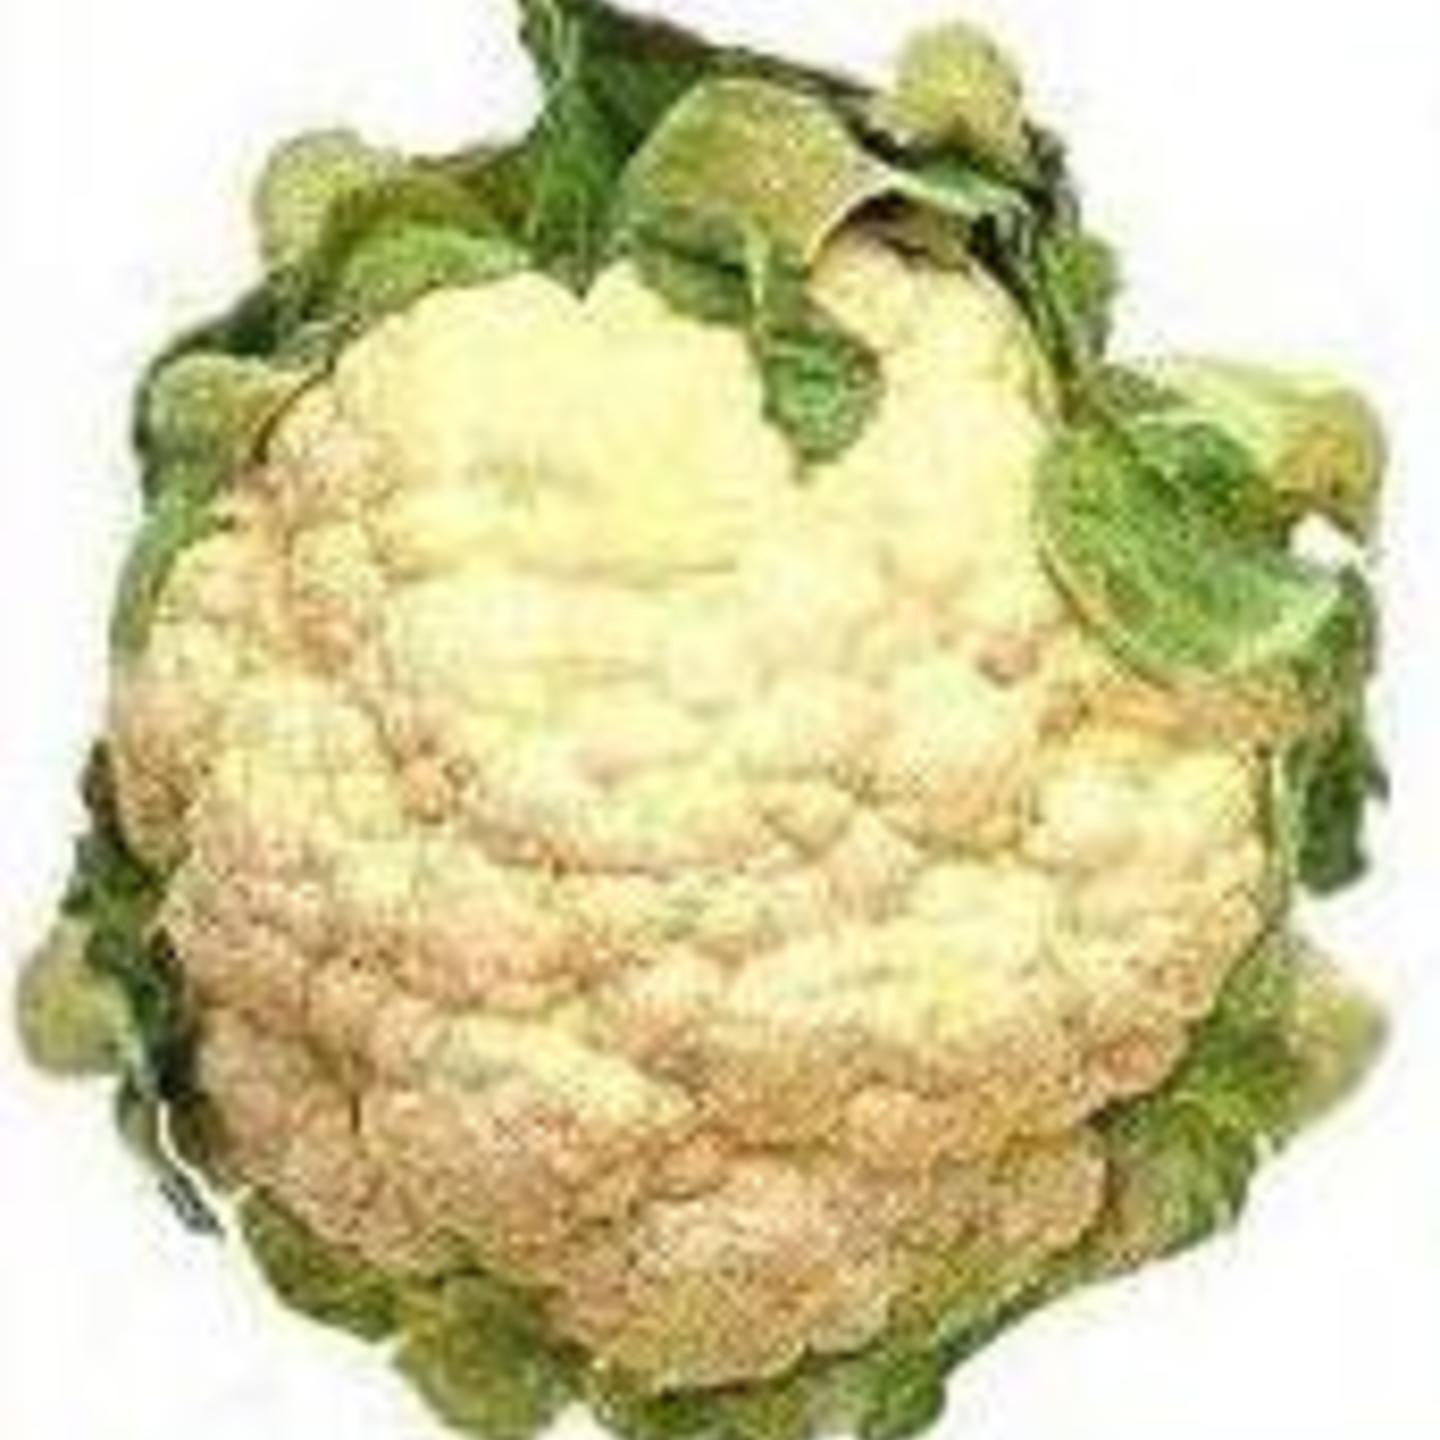 MHG-Veg-Seed-Cauliflower-20 seeds